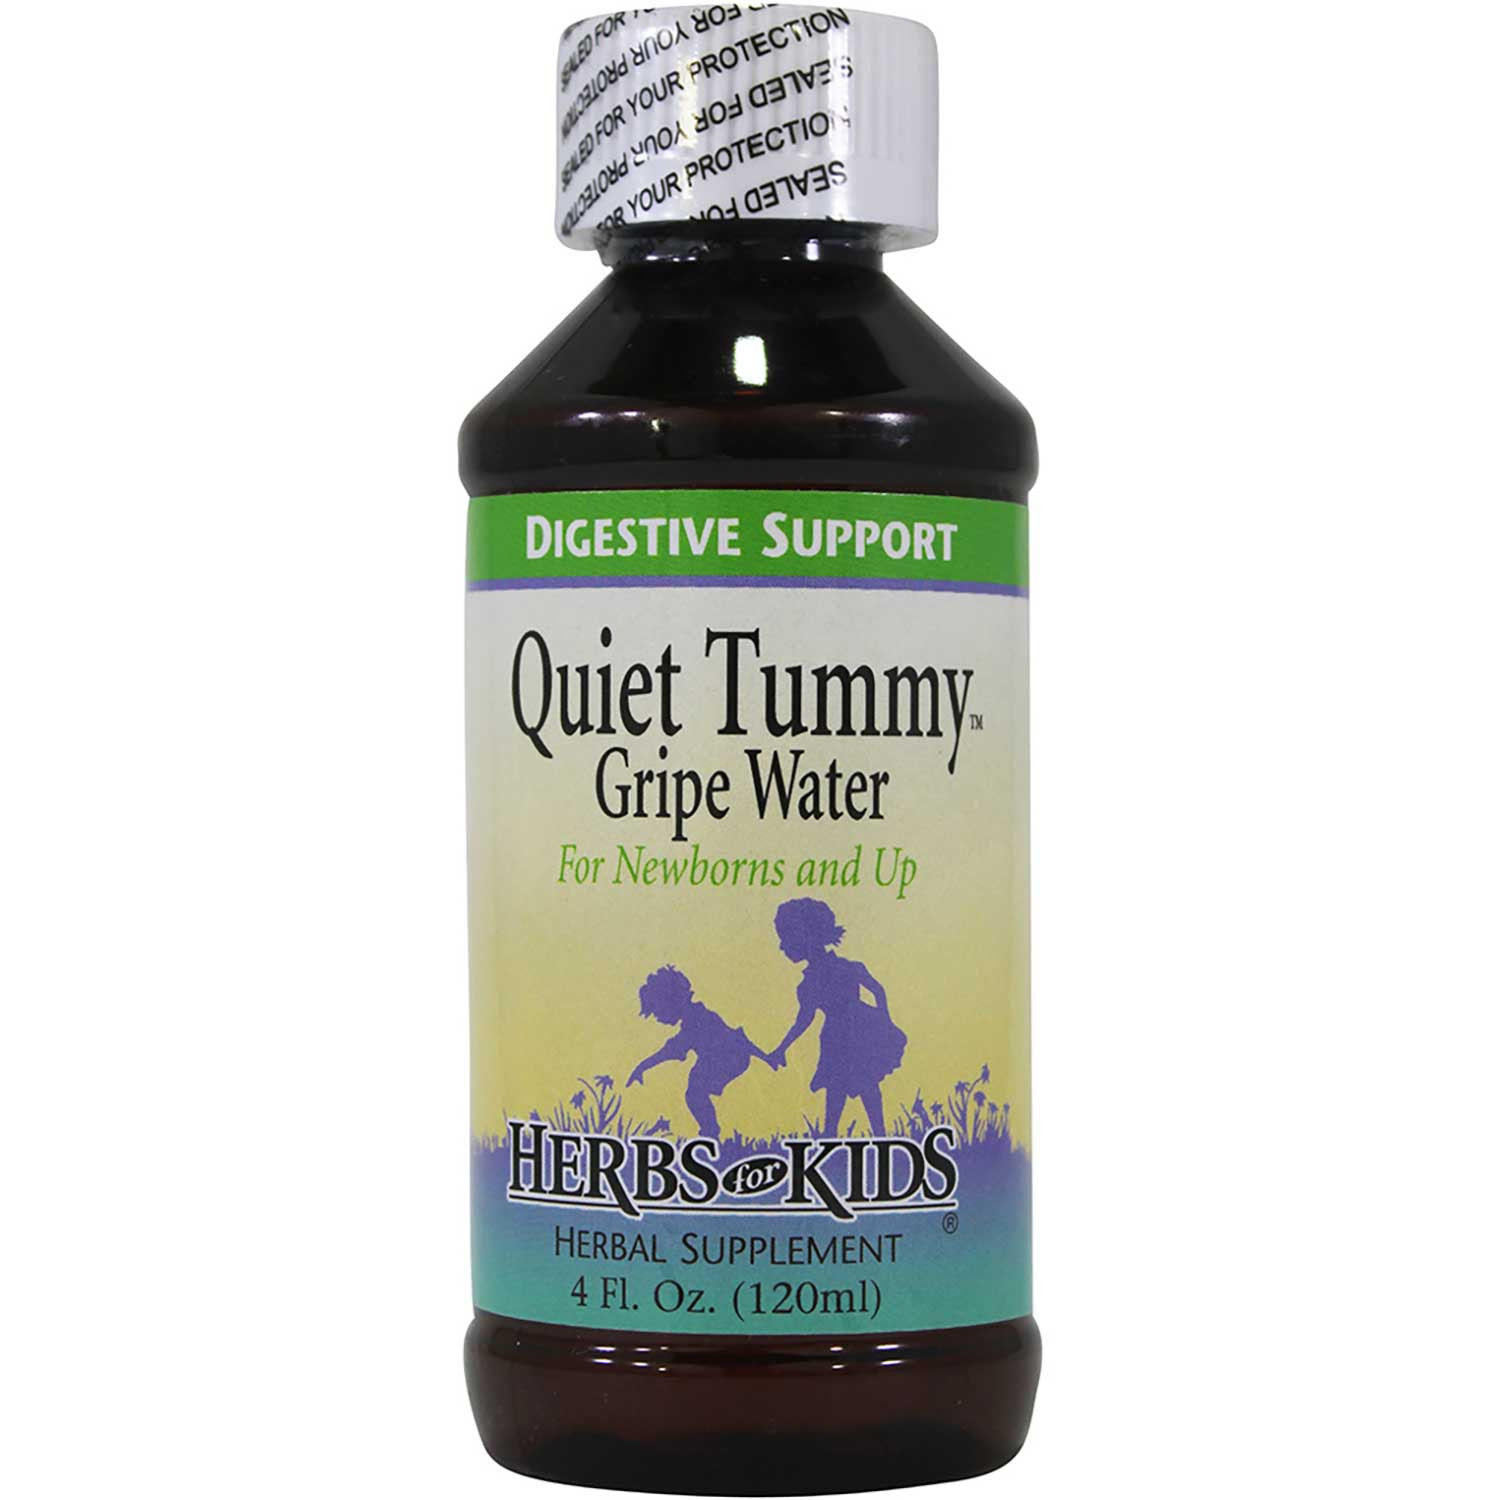 Herbs for Kids Quiet Tummy Gripe Water, 120 ml